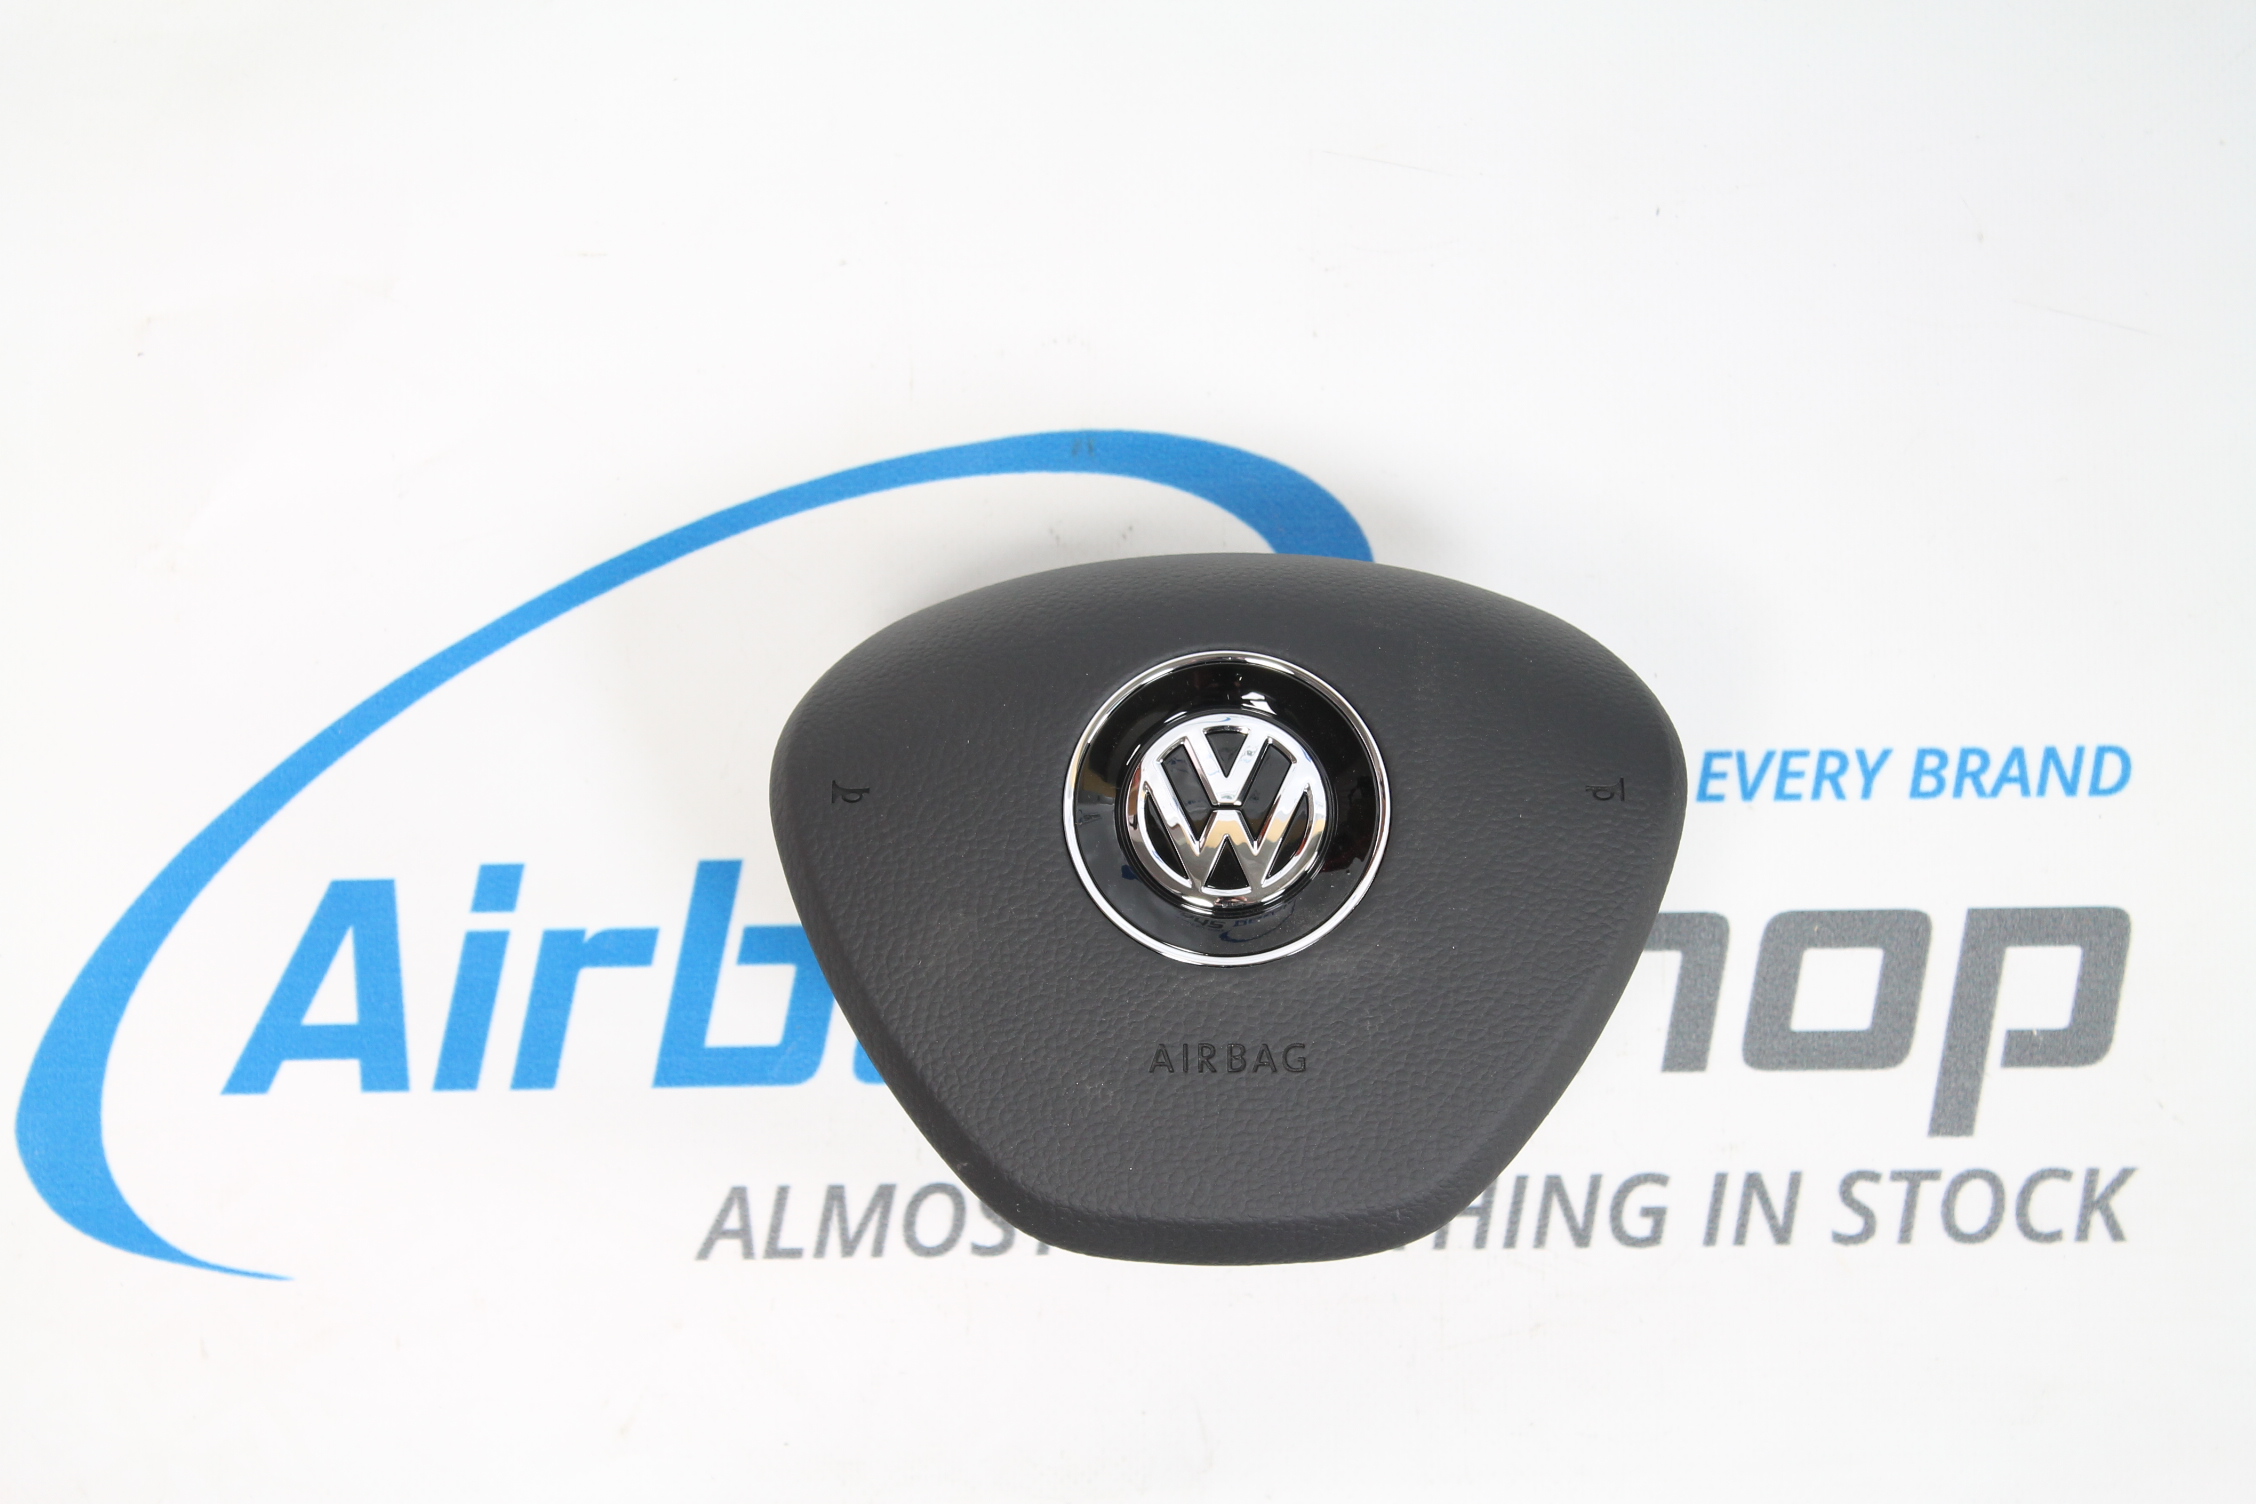 Credencial Redada responder Driver airbag Volkswagen Golf 7 (2012-....) buy ? – Airbag.eu